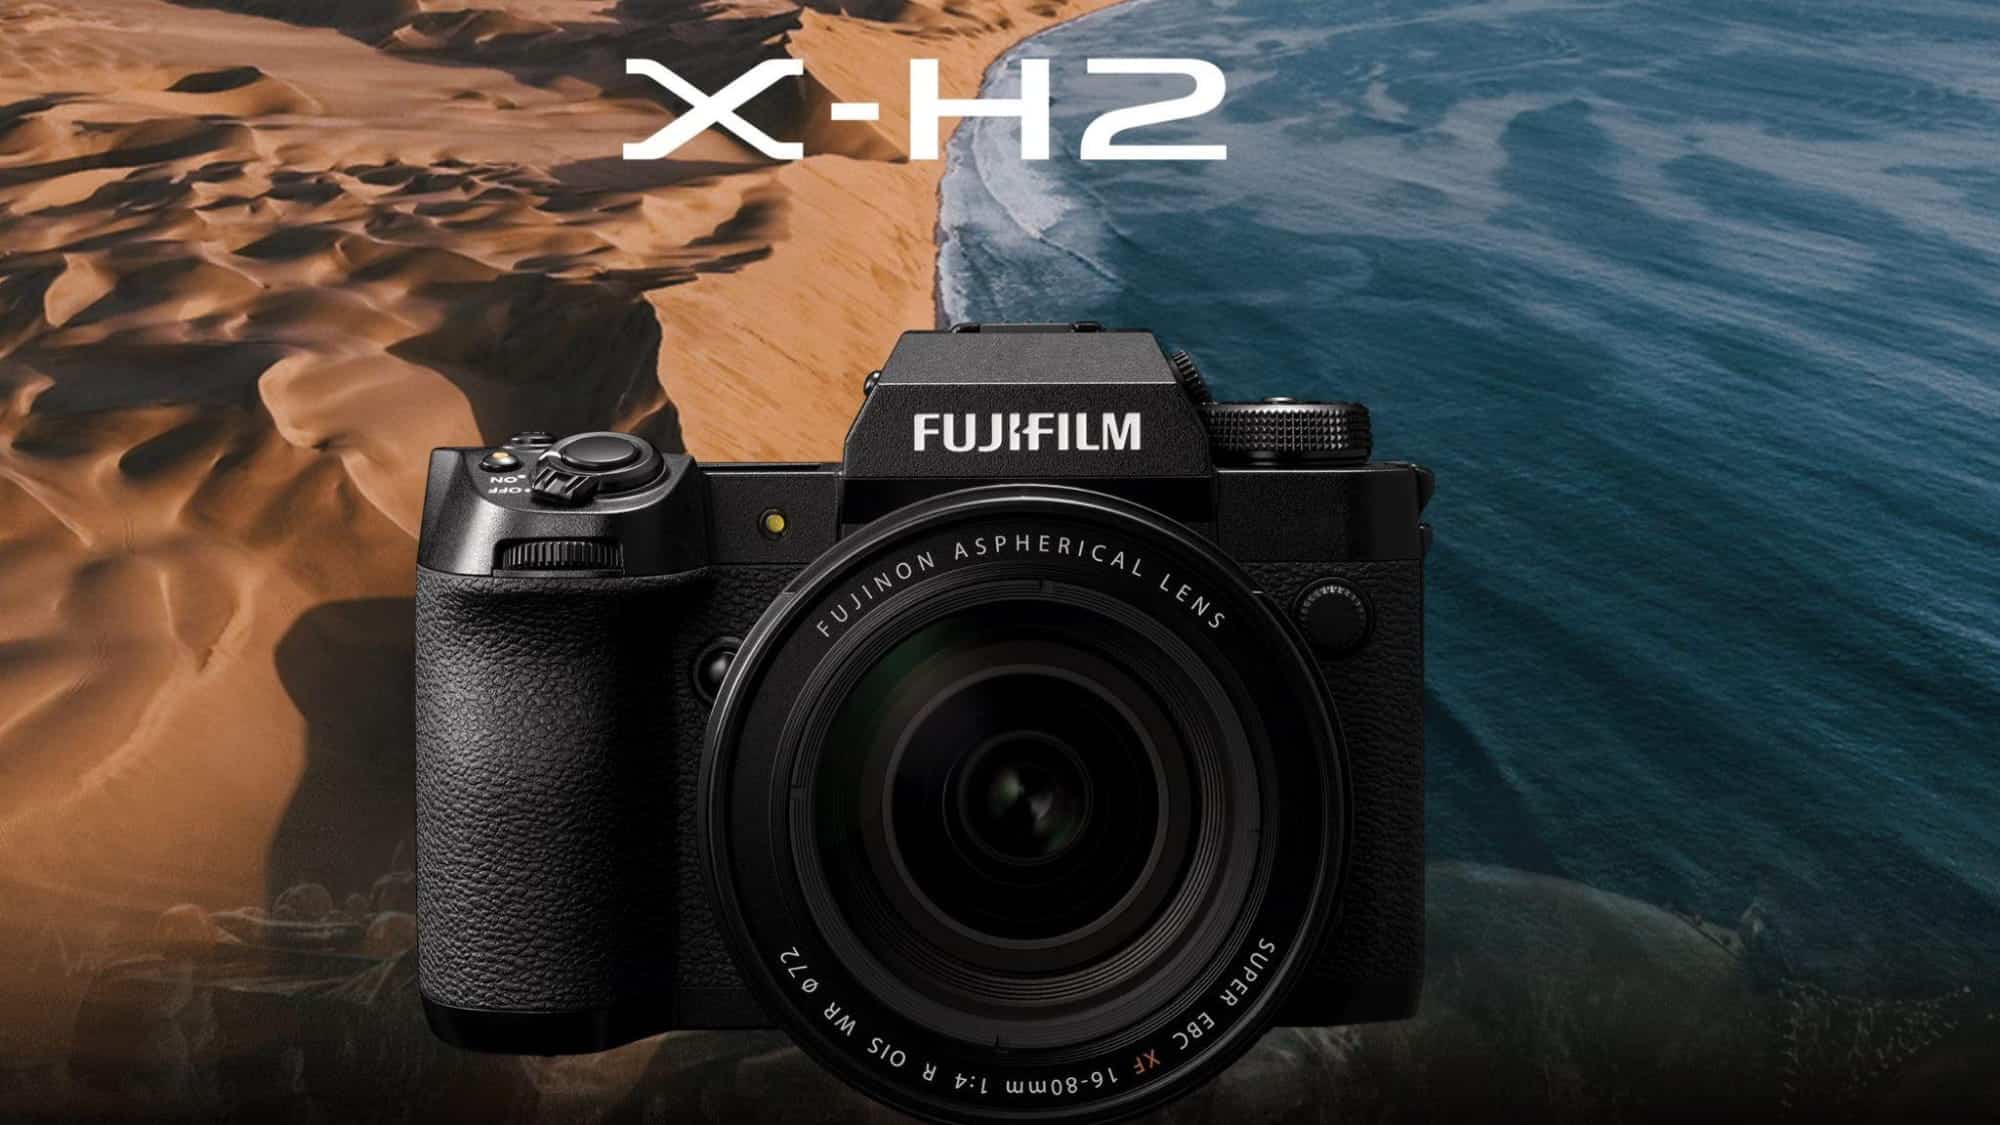 Fujifilm đính chính thông tin về các ống kính sử dụng với máy ảnh Fujifilm X-H2 trước đó